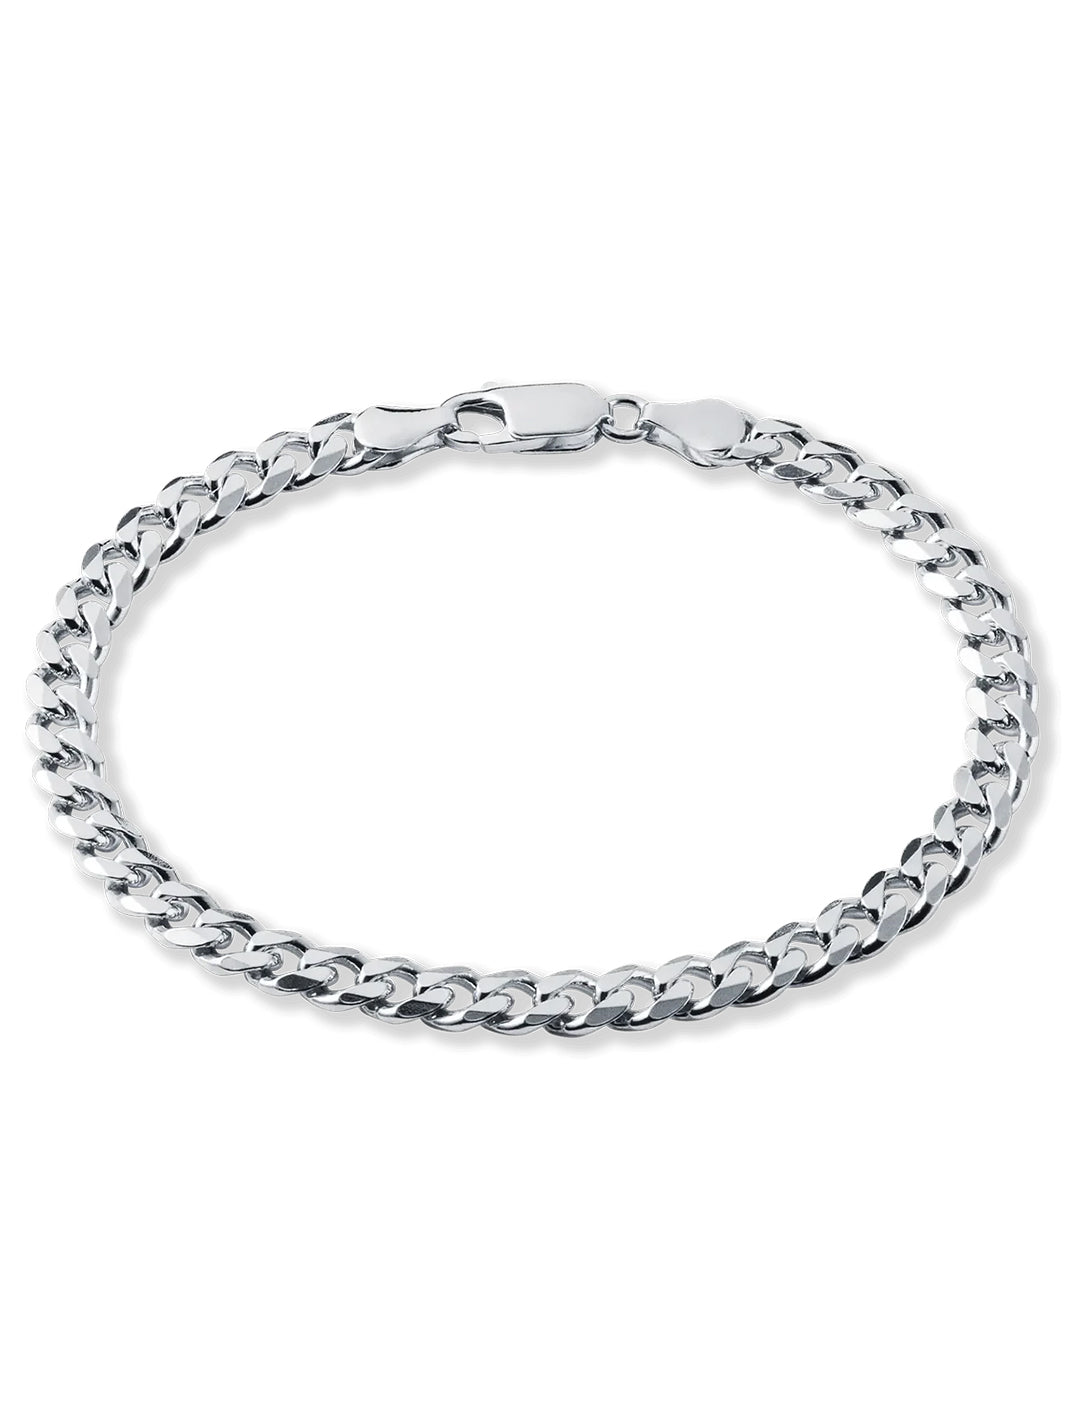 Silver Curb Mens Bracelet - Roop Darshan